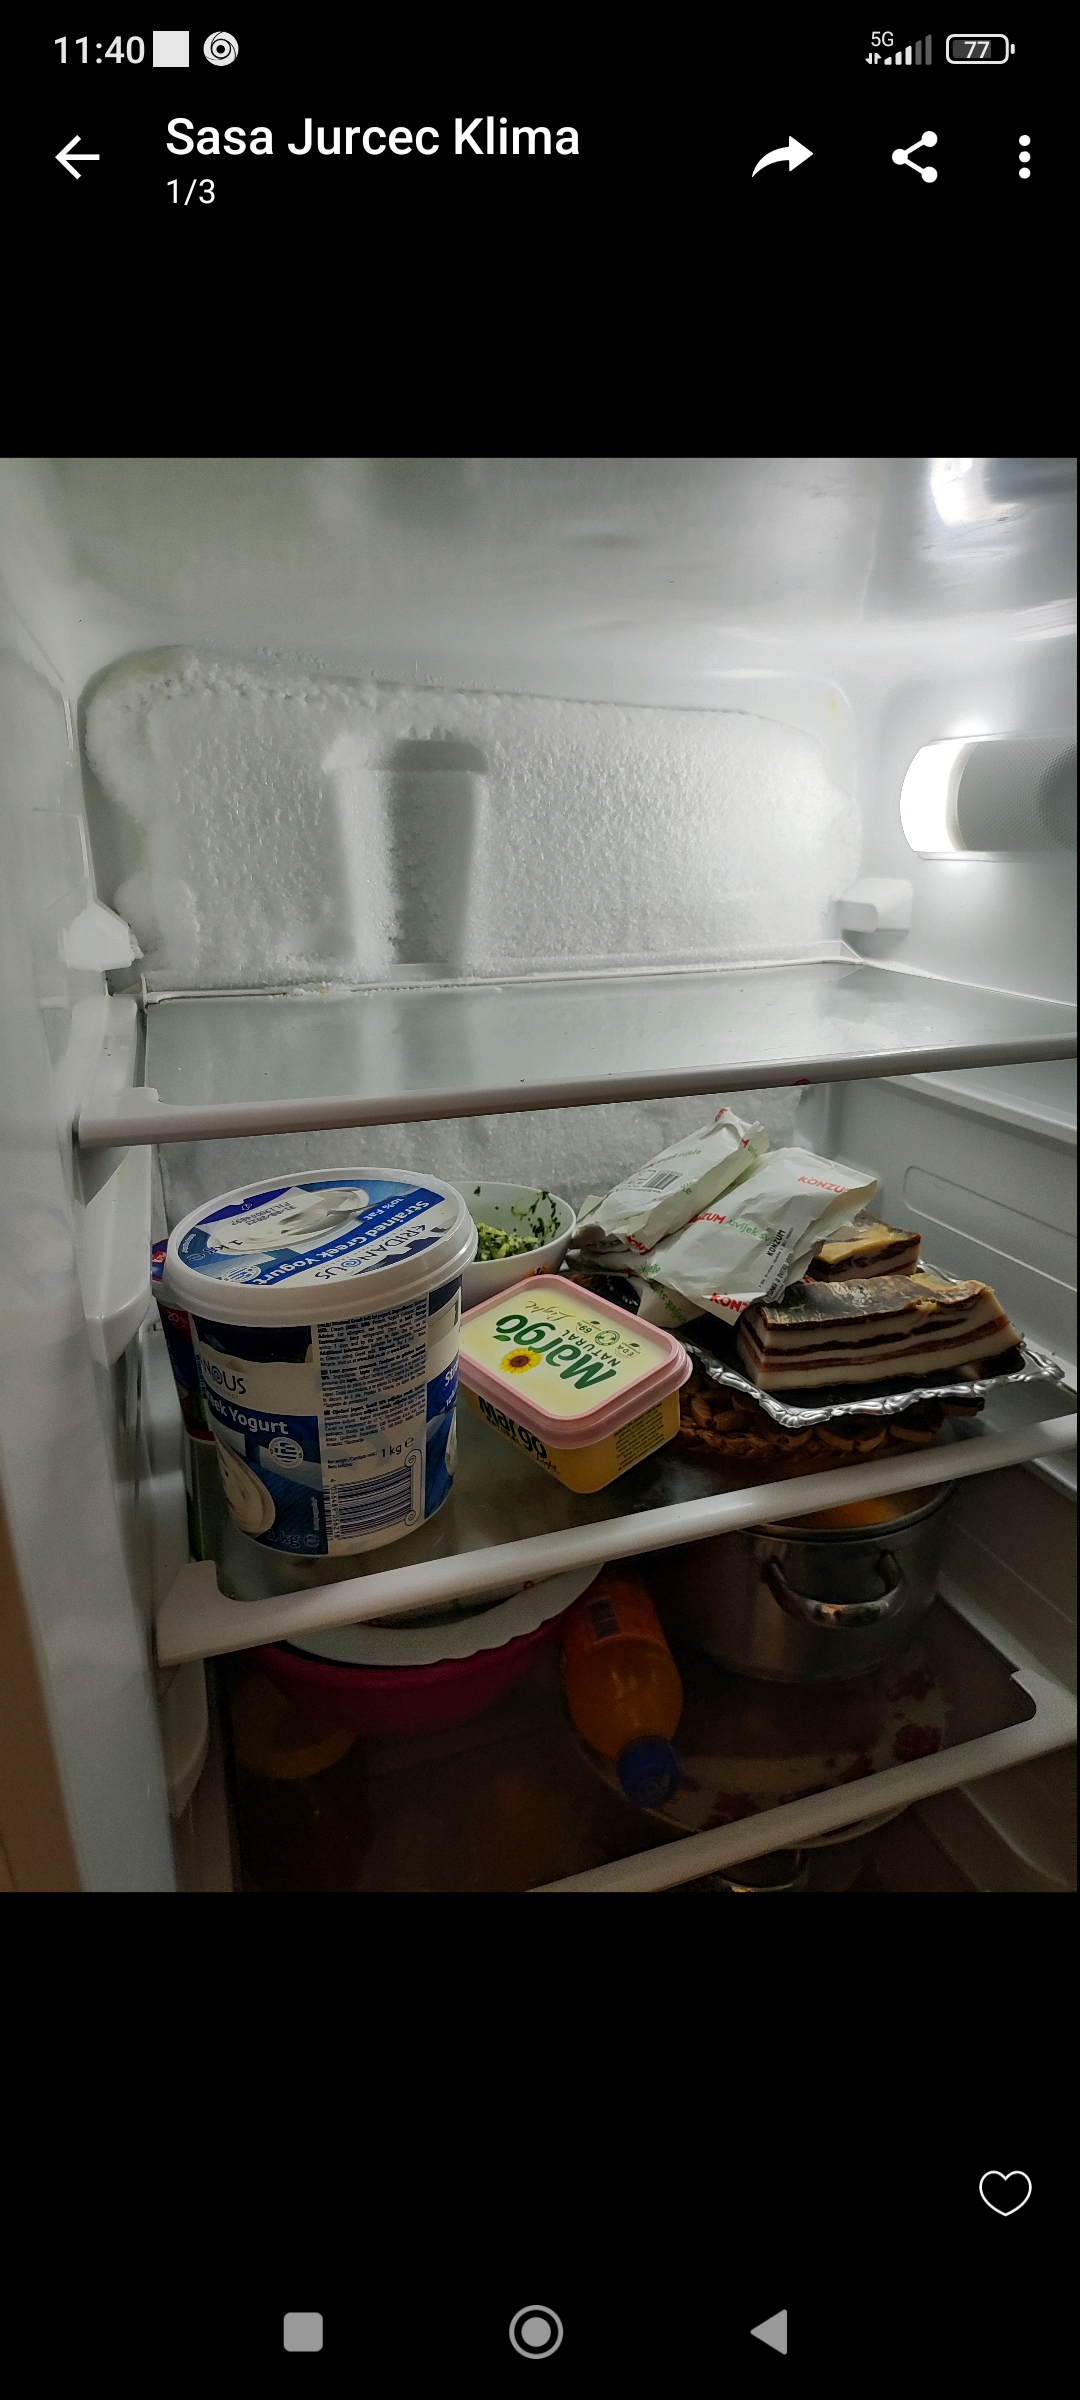 Er vormt zich ijs op de achtergrond van de koelkast
Afbeelding bijgevoegd
Wat moeten we doen?